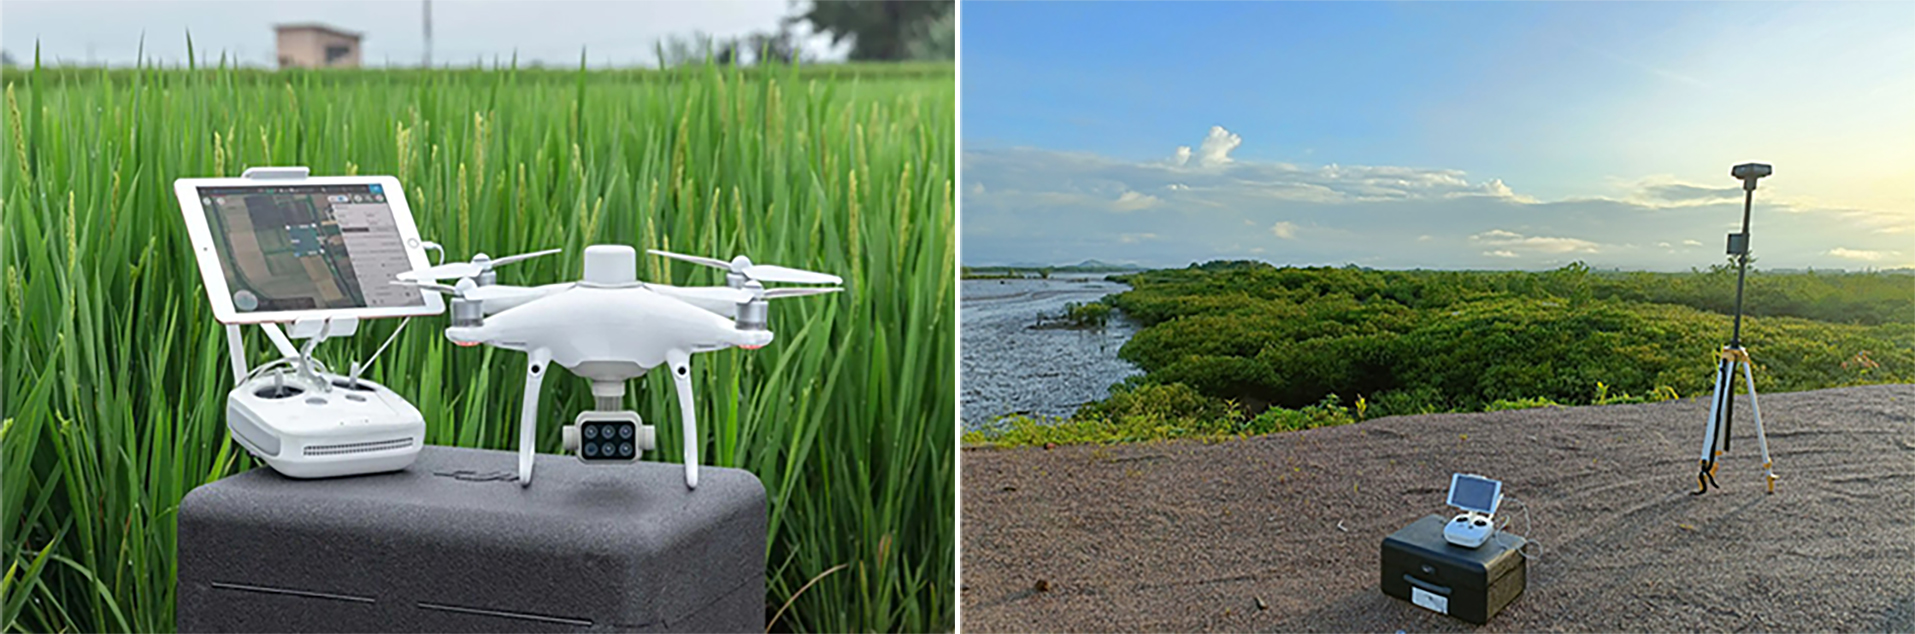 Xây dựng bản đồ độ phân giải cao dựa trên công nghệ thiết bị bay không người lái (UAV)